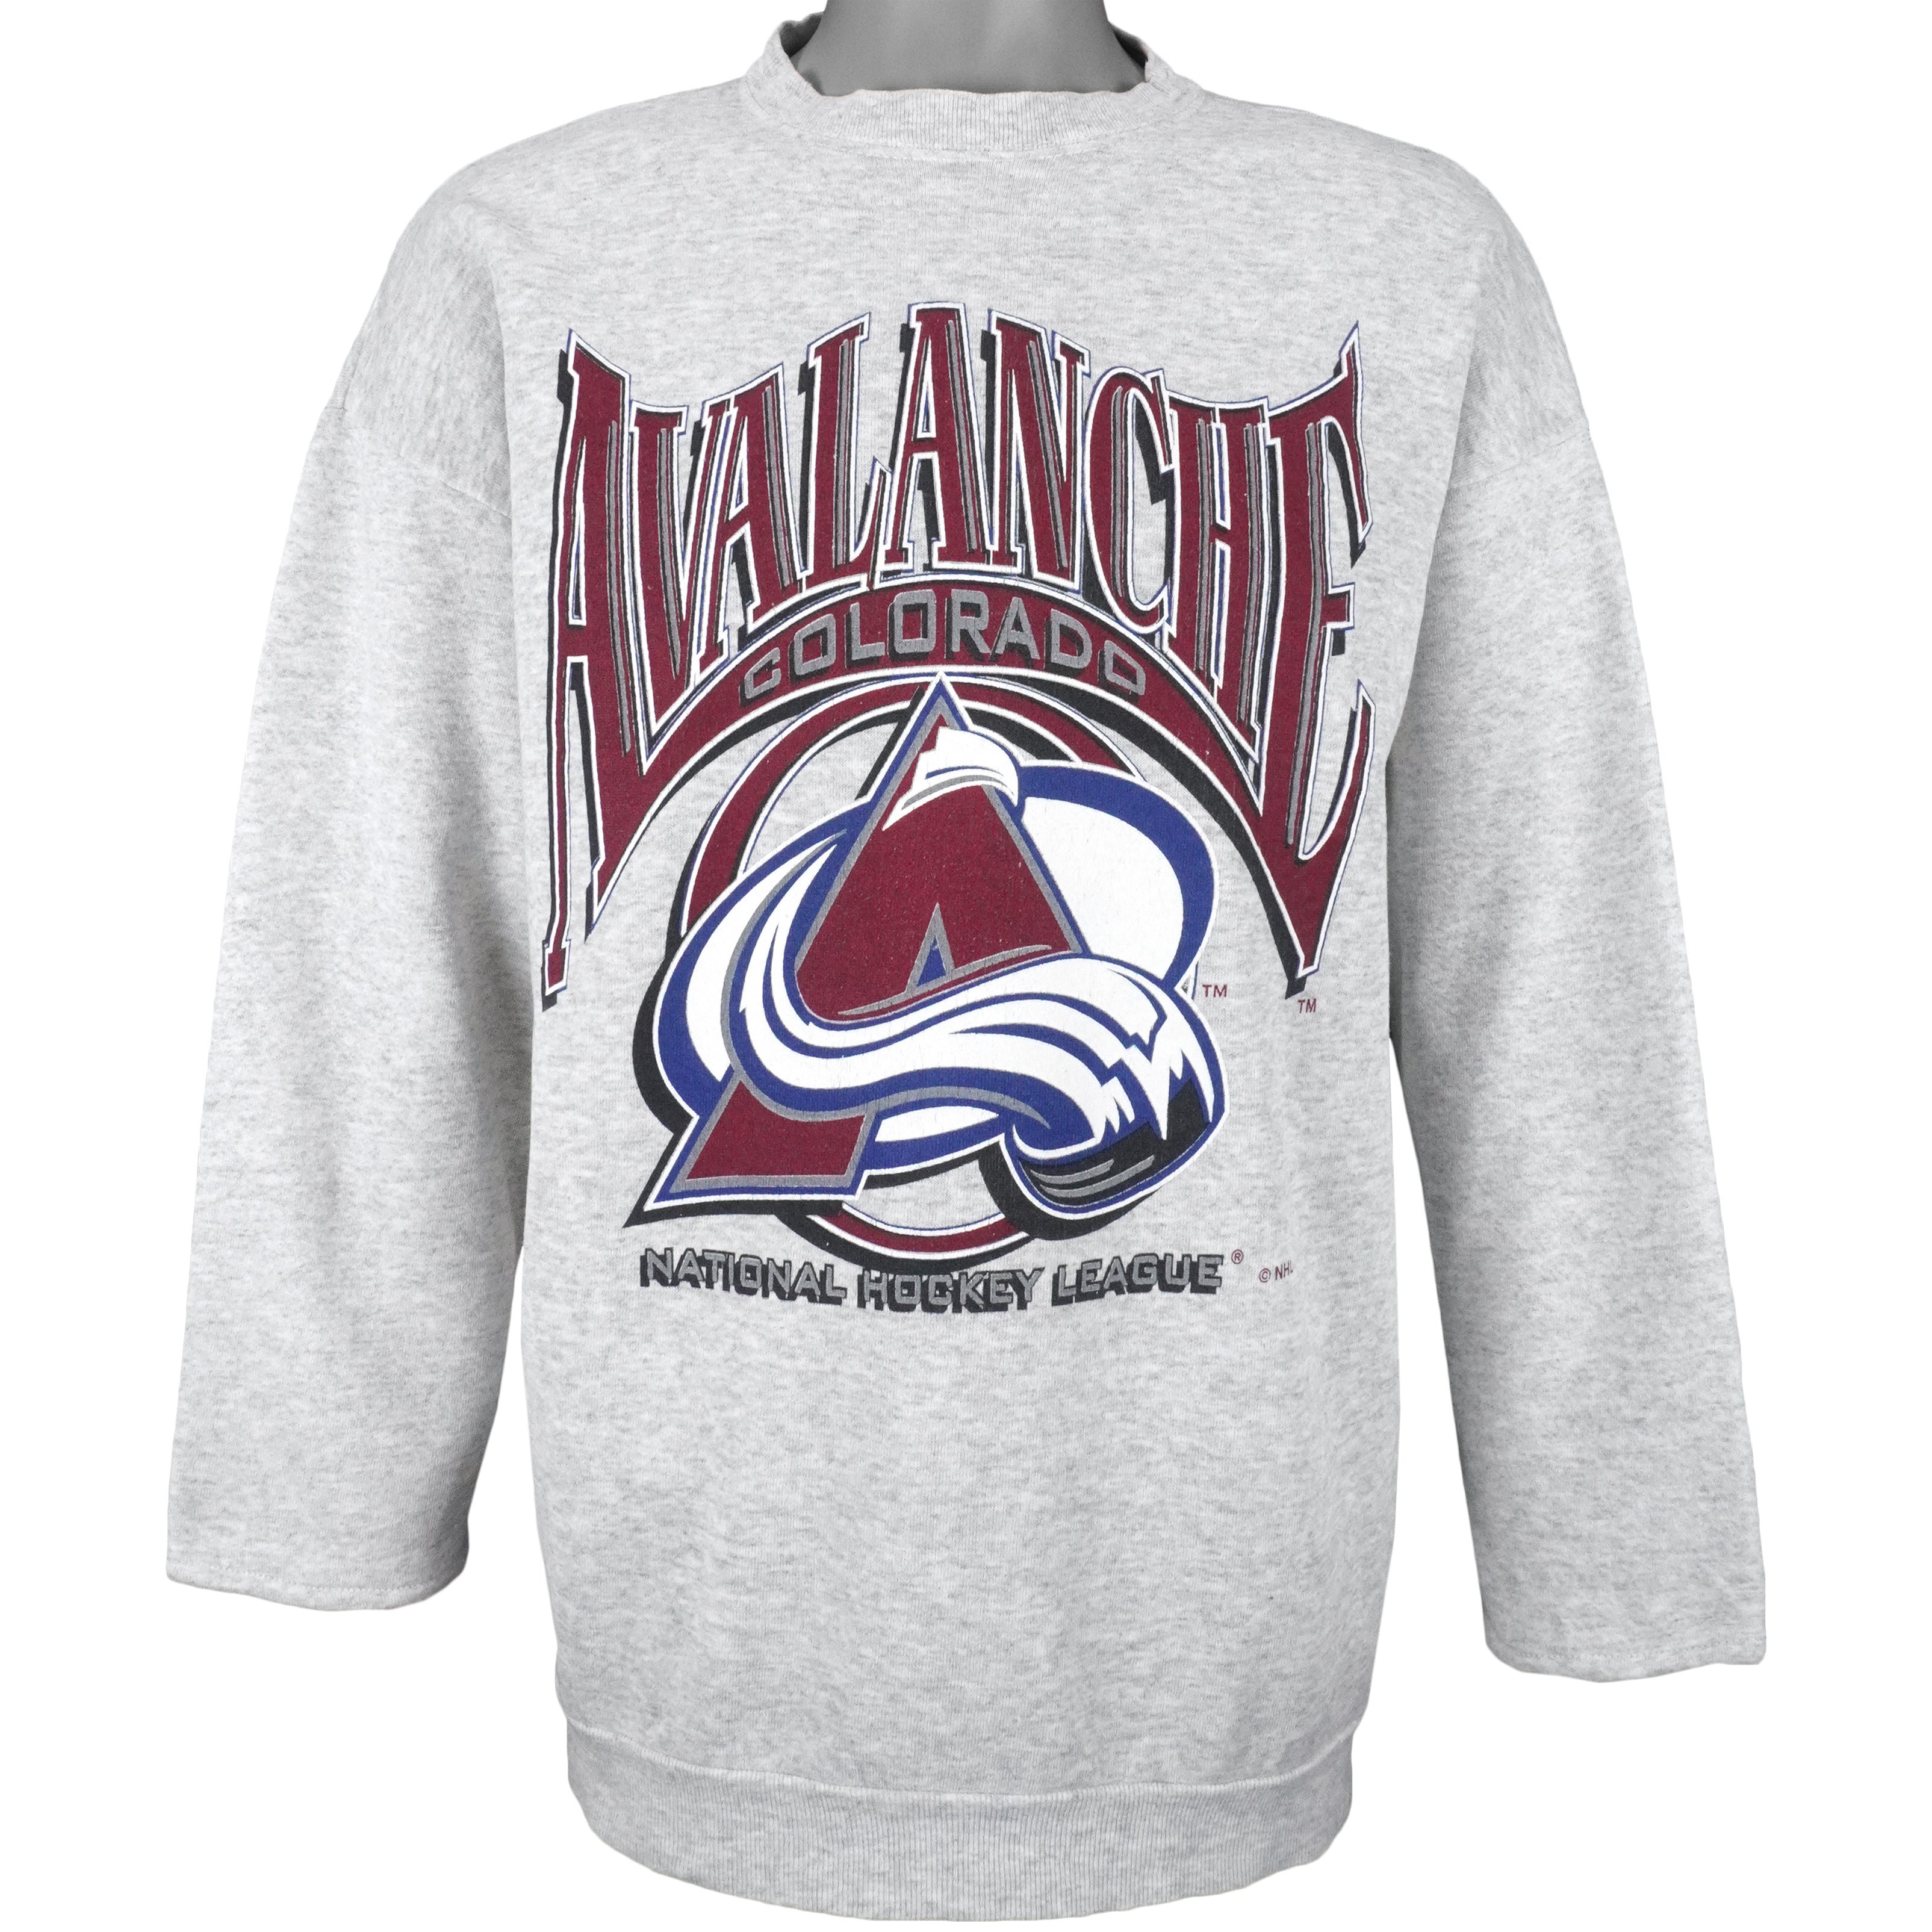 Retro 90s Colorado Avalanche Ice Hockey Printed Sweatshirt